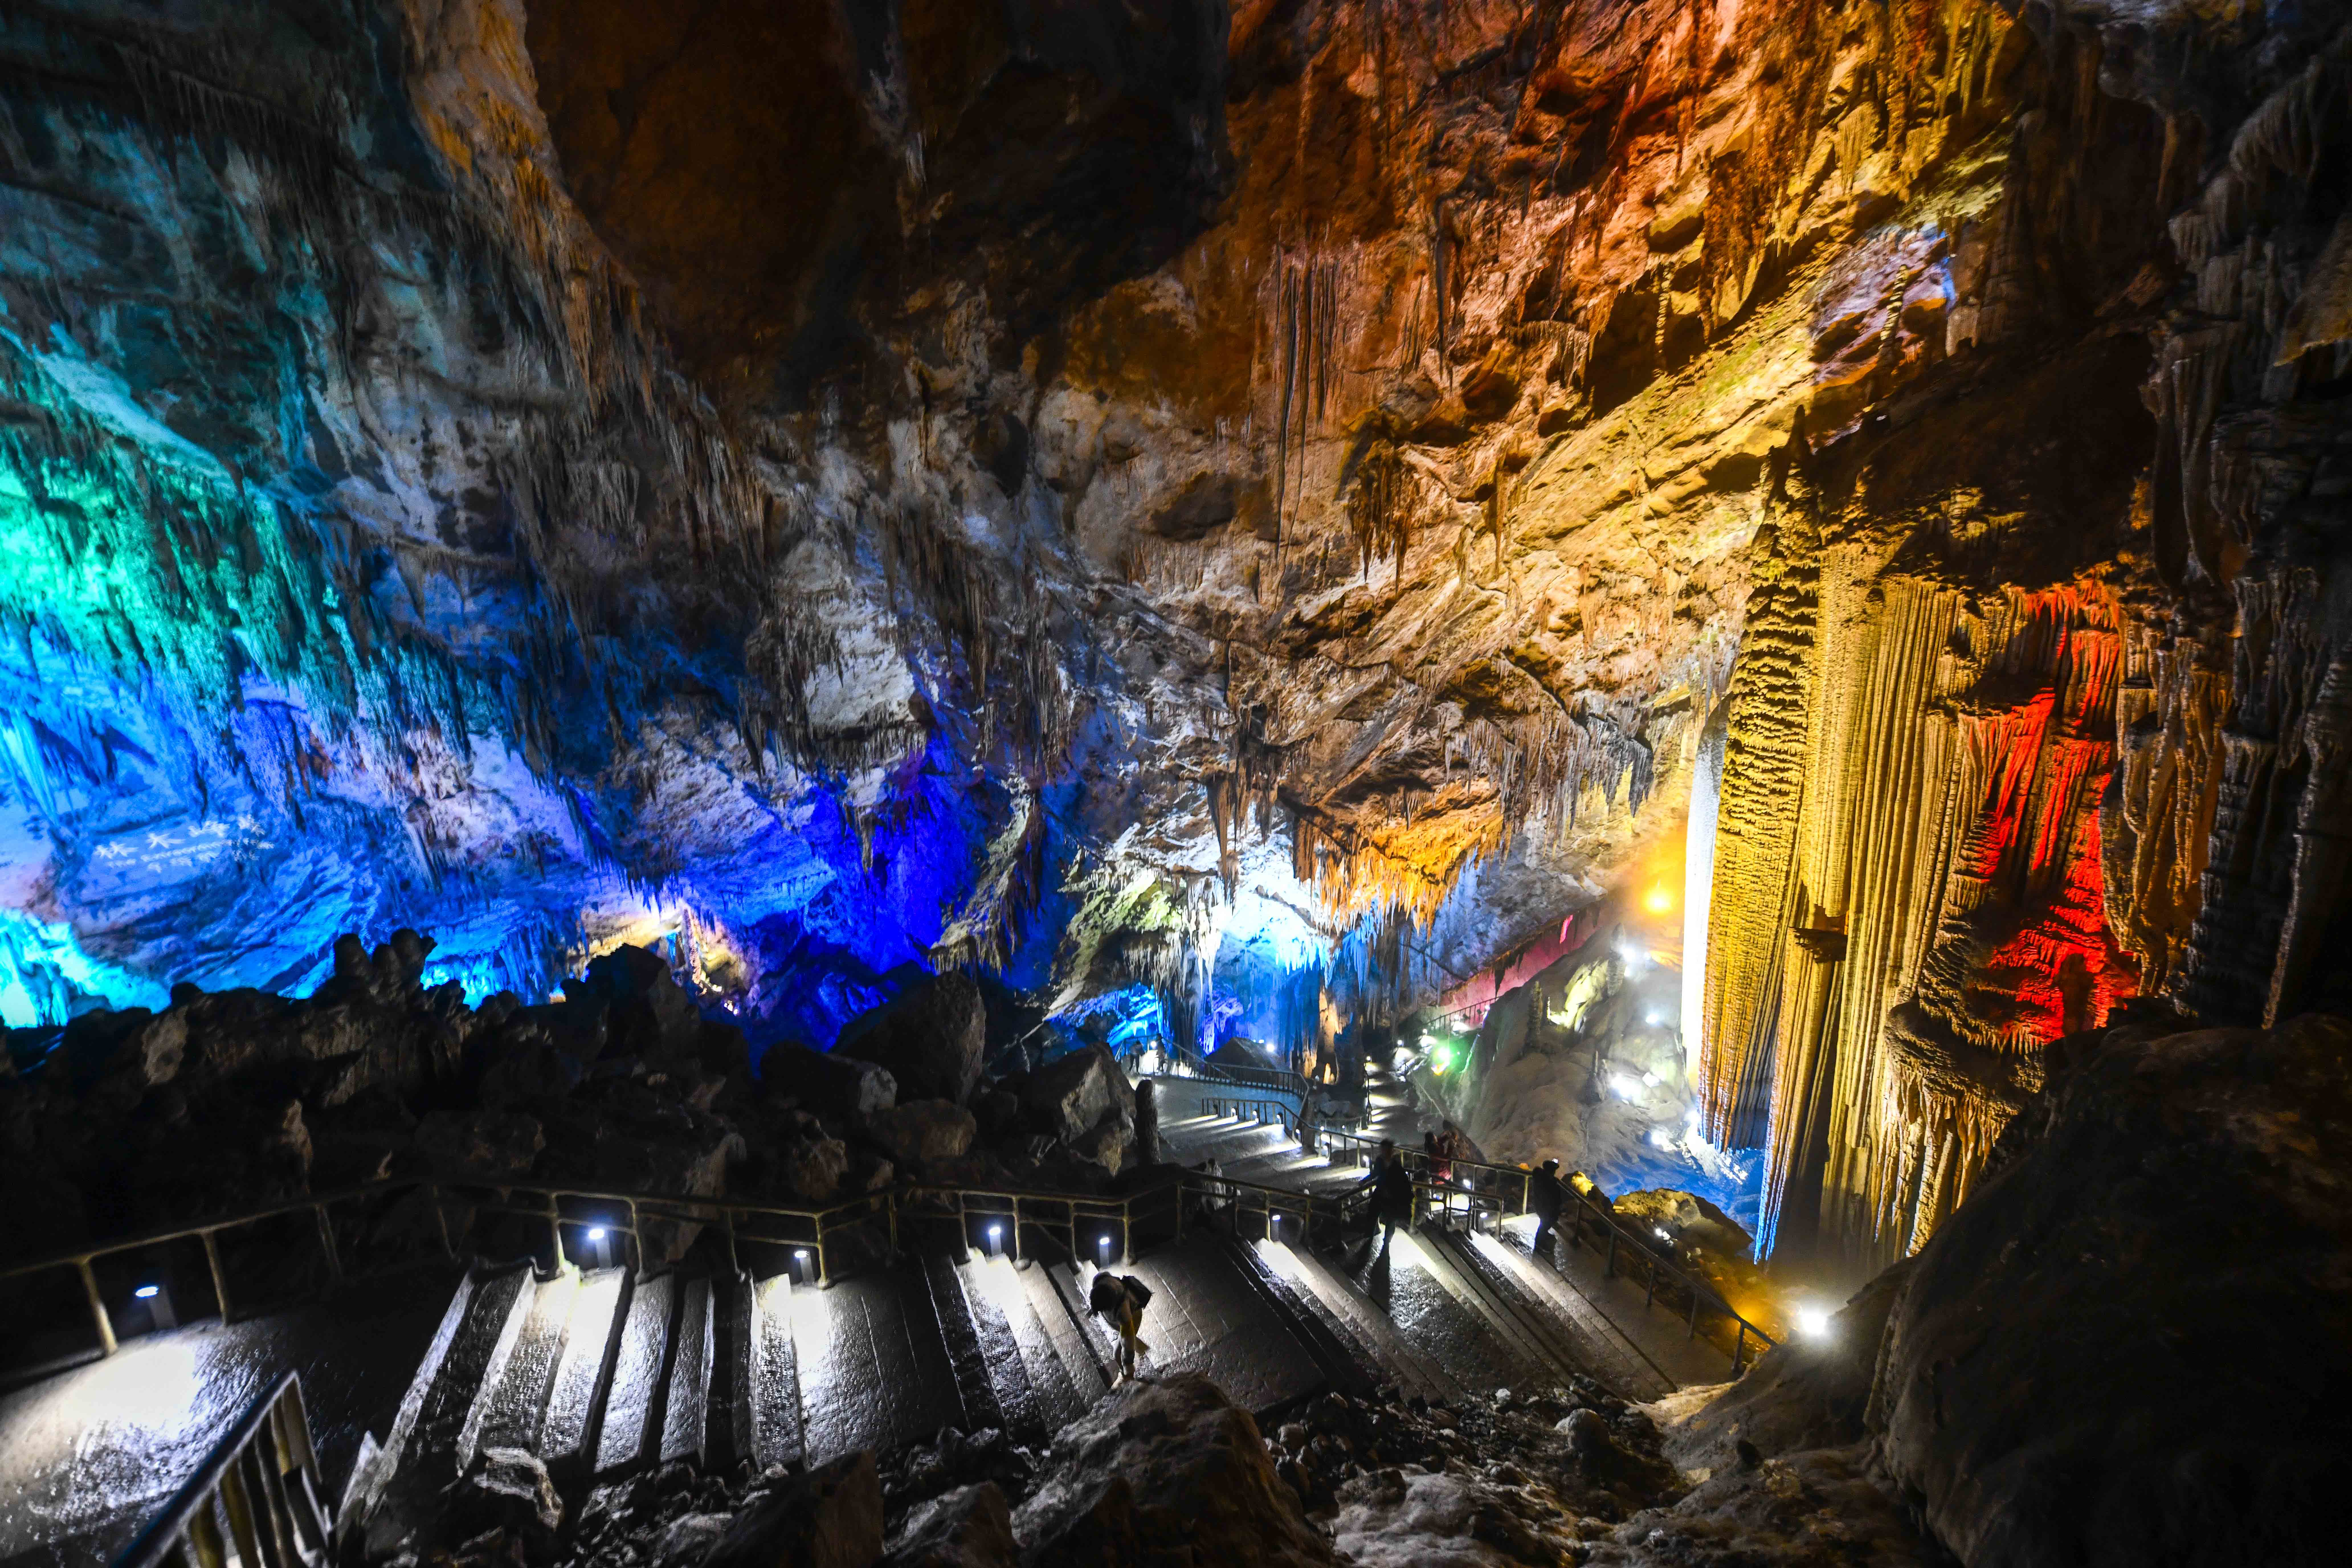 这是重庆武隆芙蓉洞内美丽的地下溶洞景观(3月26日摄)